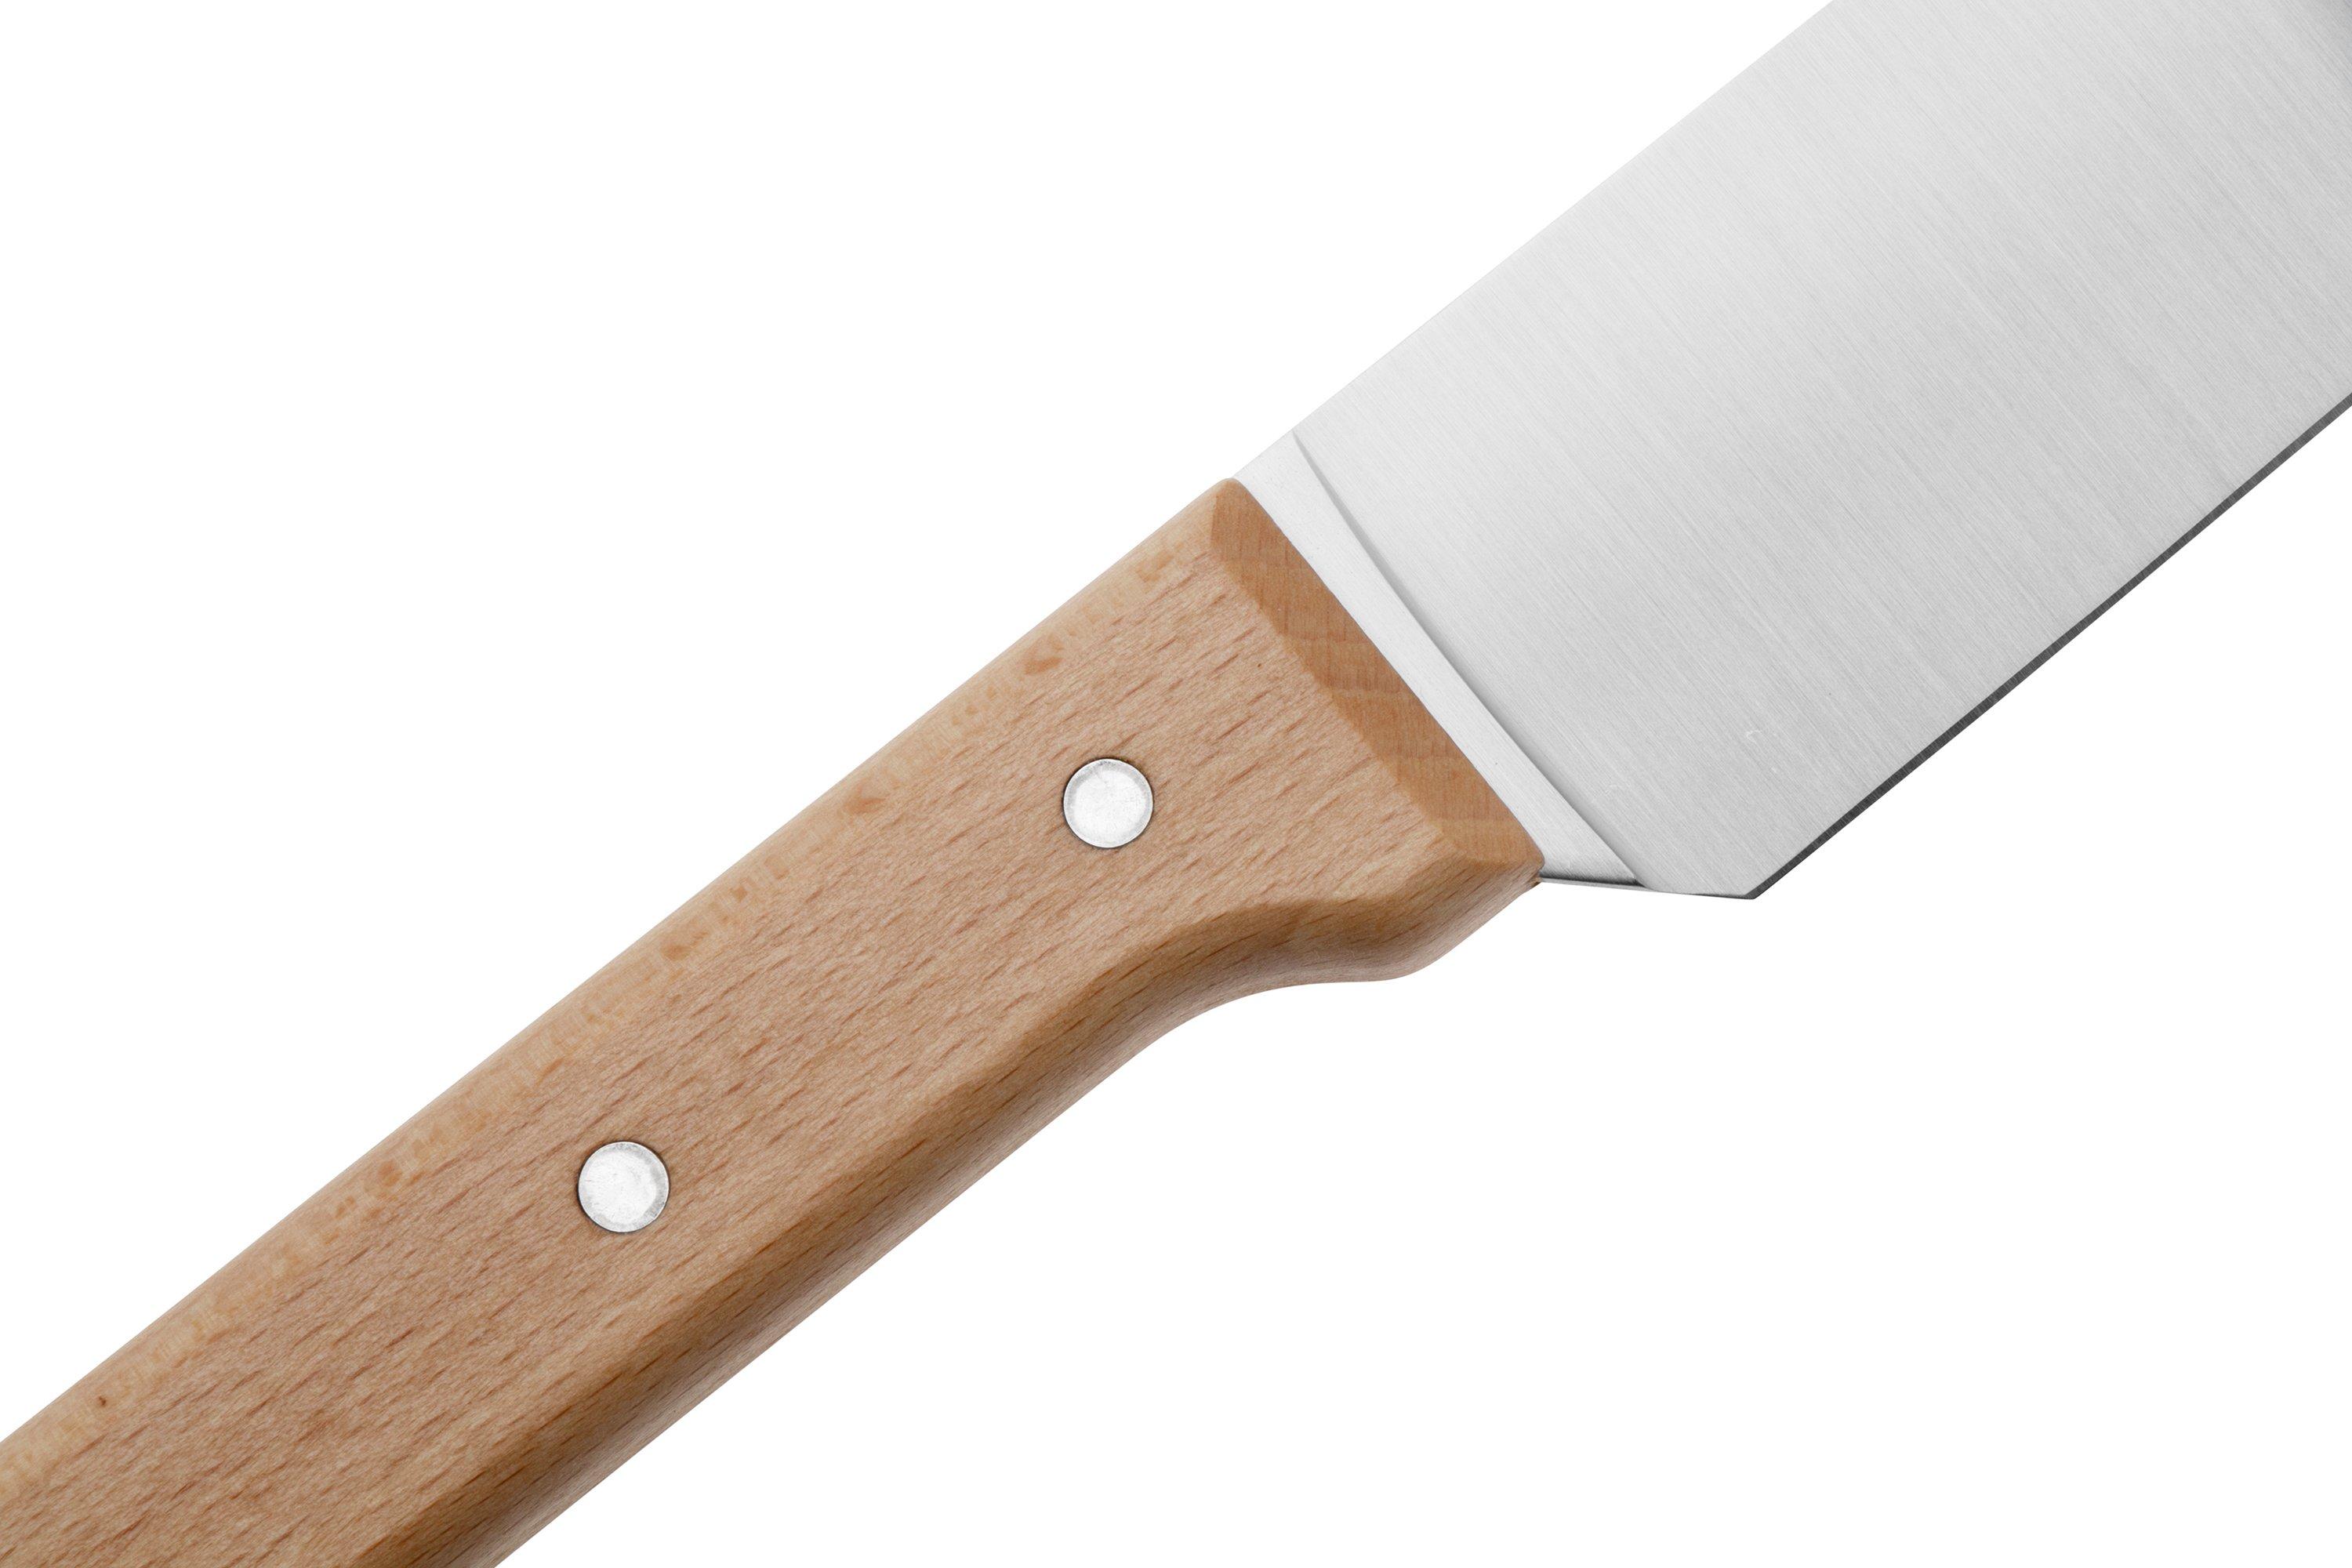 Opinel coltello da tasca No. 10, acciaio inox, 10 cm  Fare acquisti  vantaggiosamente su